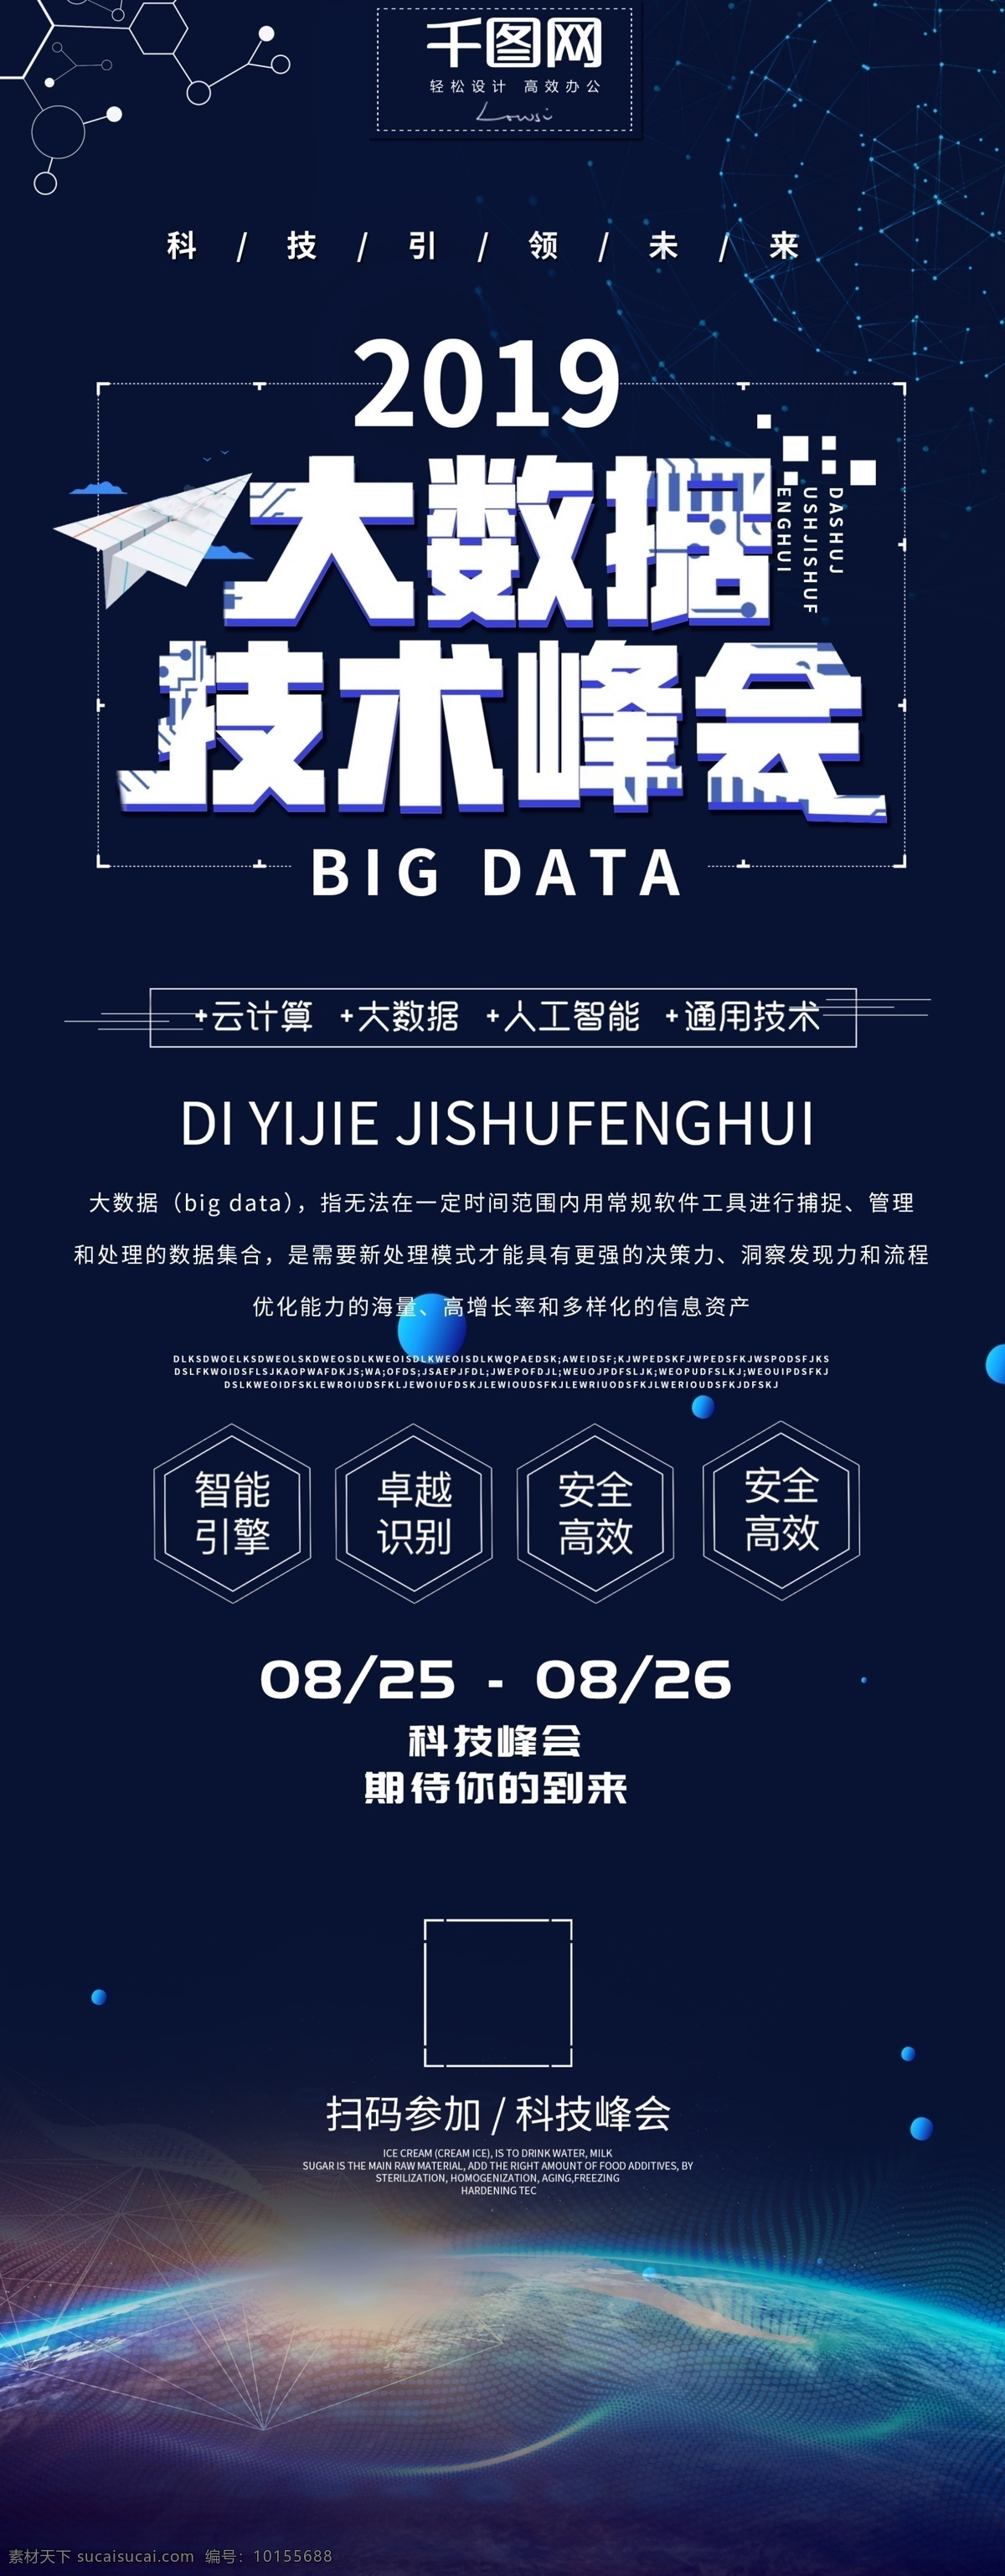 简约 蓝色 科技 大 数据 技术 峰会 展架 大数据 技术峰会 大数据展架 企业